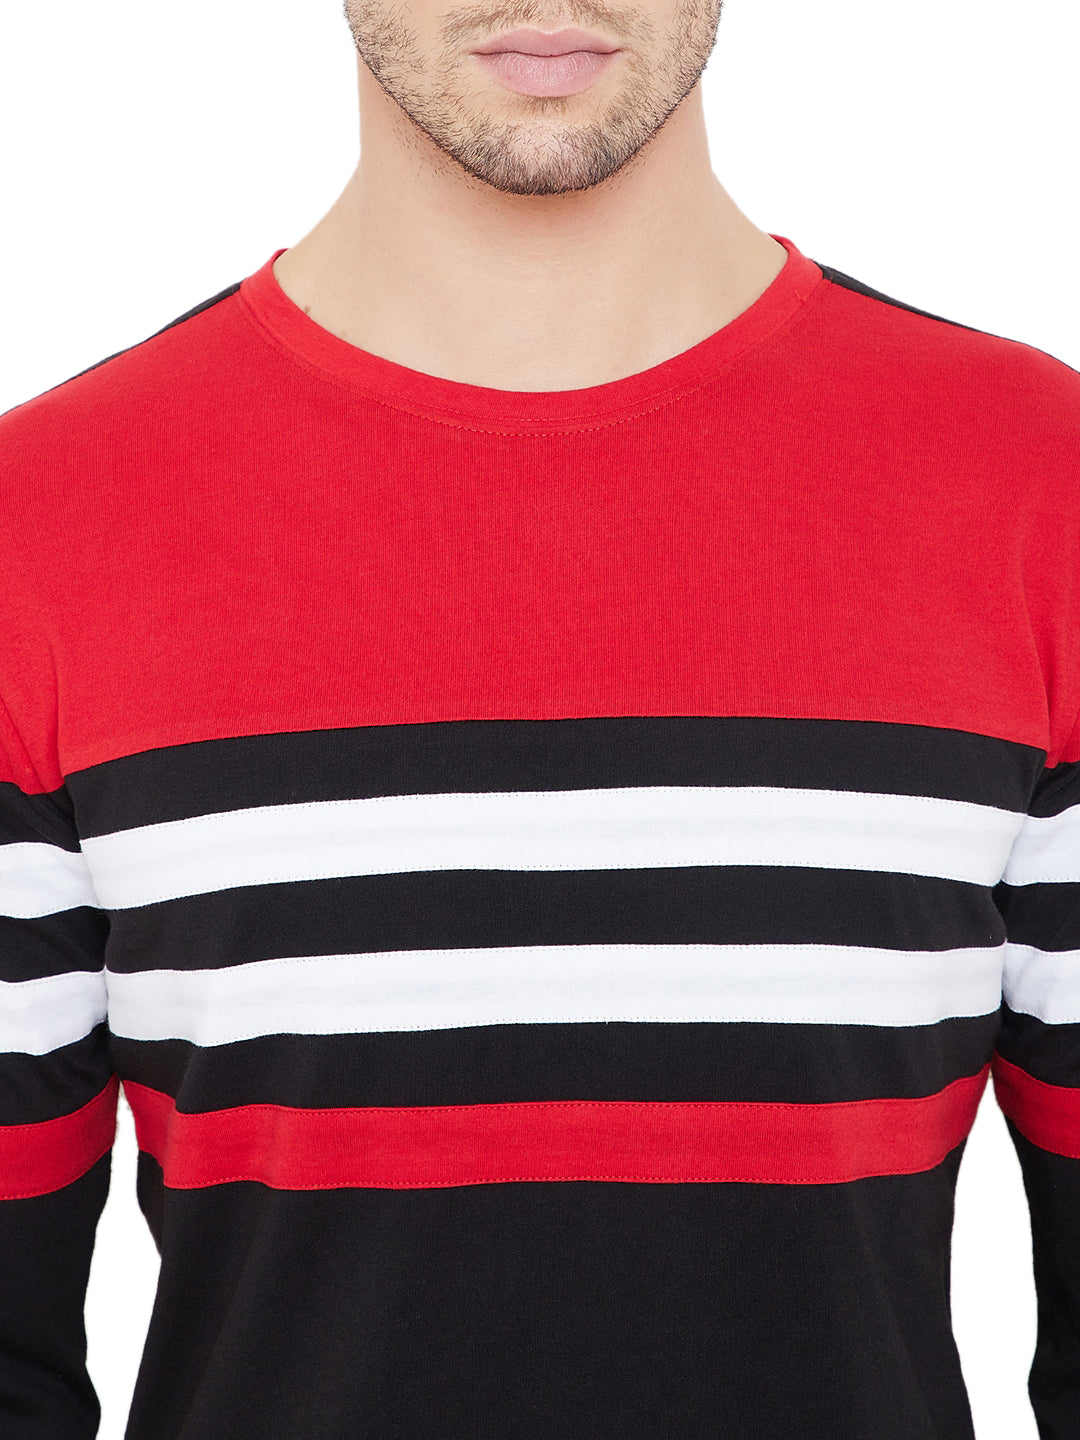 Black/White/Red Men Full Sleeves Round Neck Color Block T-Shirt